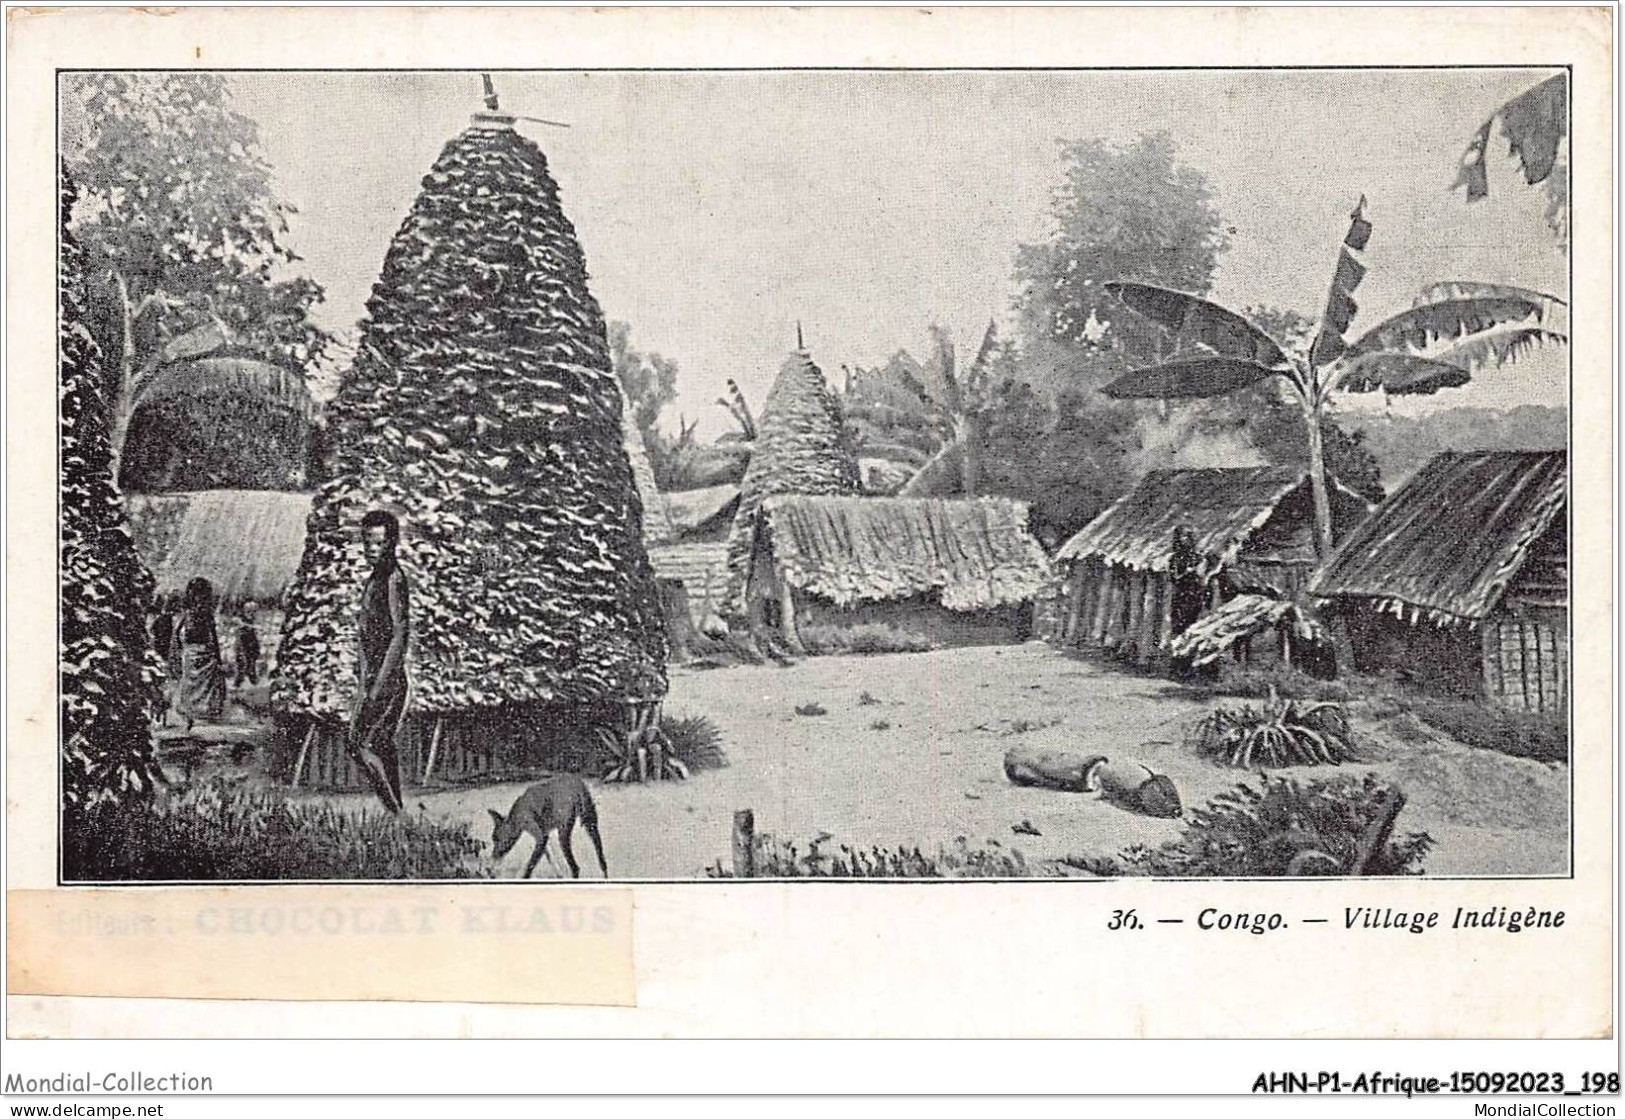 AHNP1-0099 - AFRIQUE - CONGO - Village Indigene - French Congo